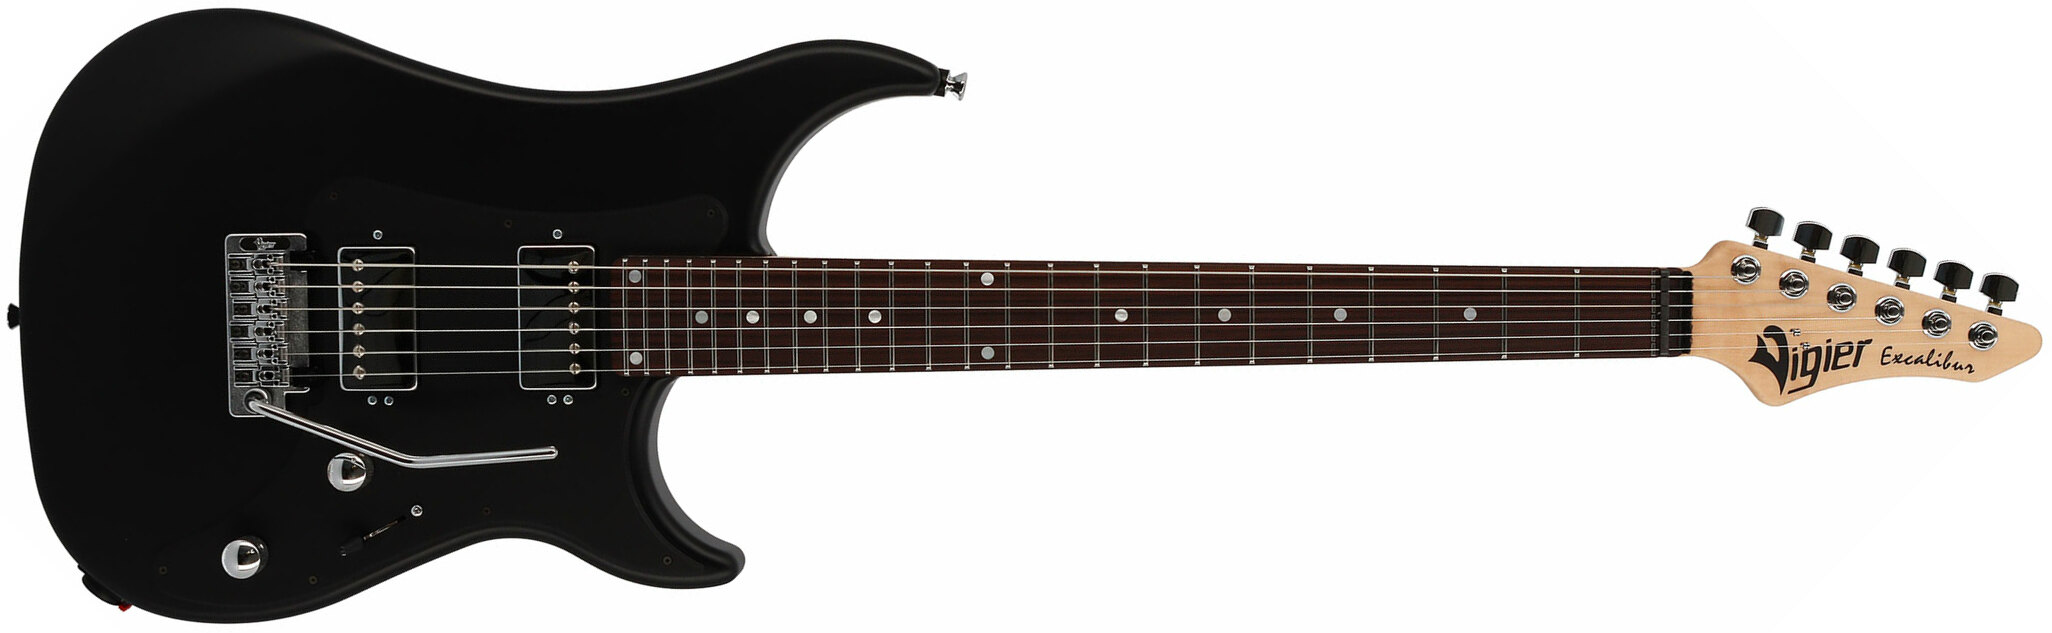 Vigier Excalibur Indus 2h Trem Rw - Black Matte - Guitare Électrique Double Cut - Main picture